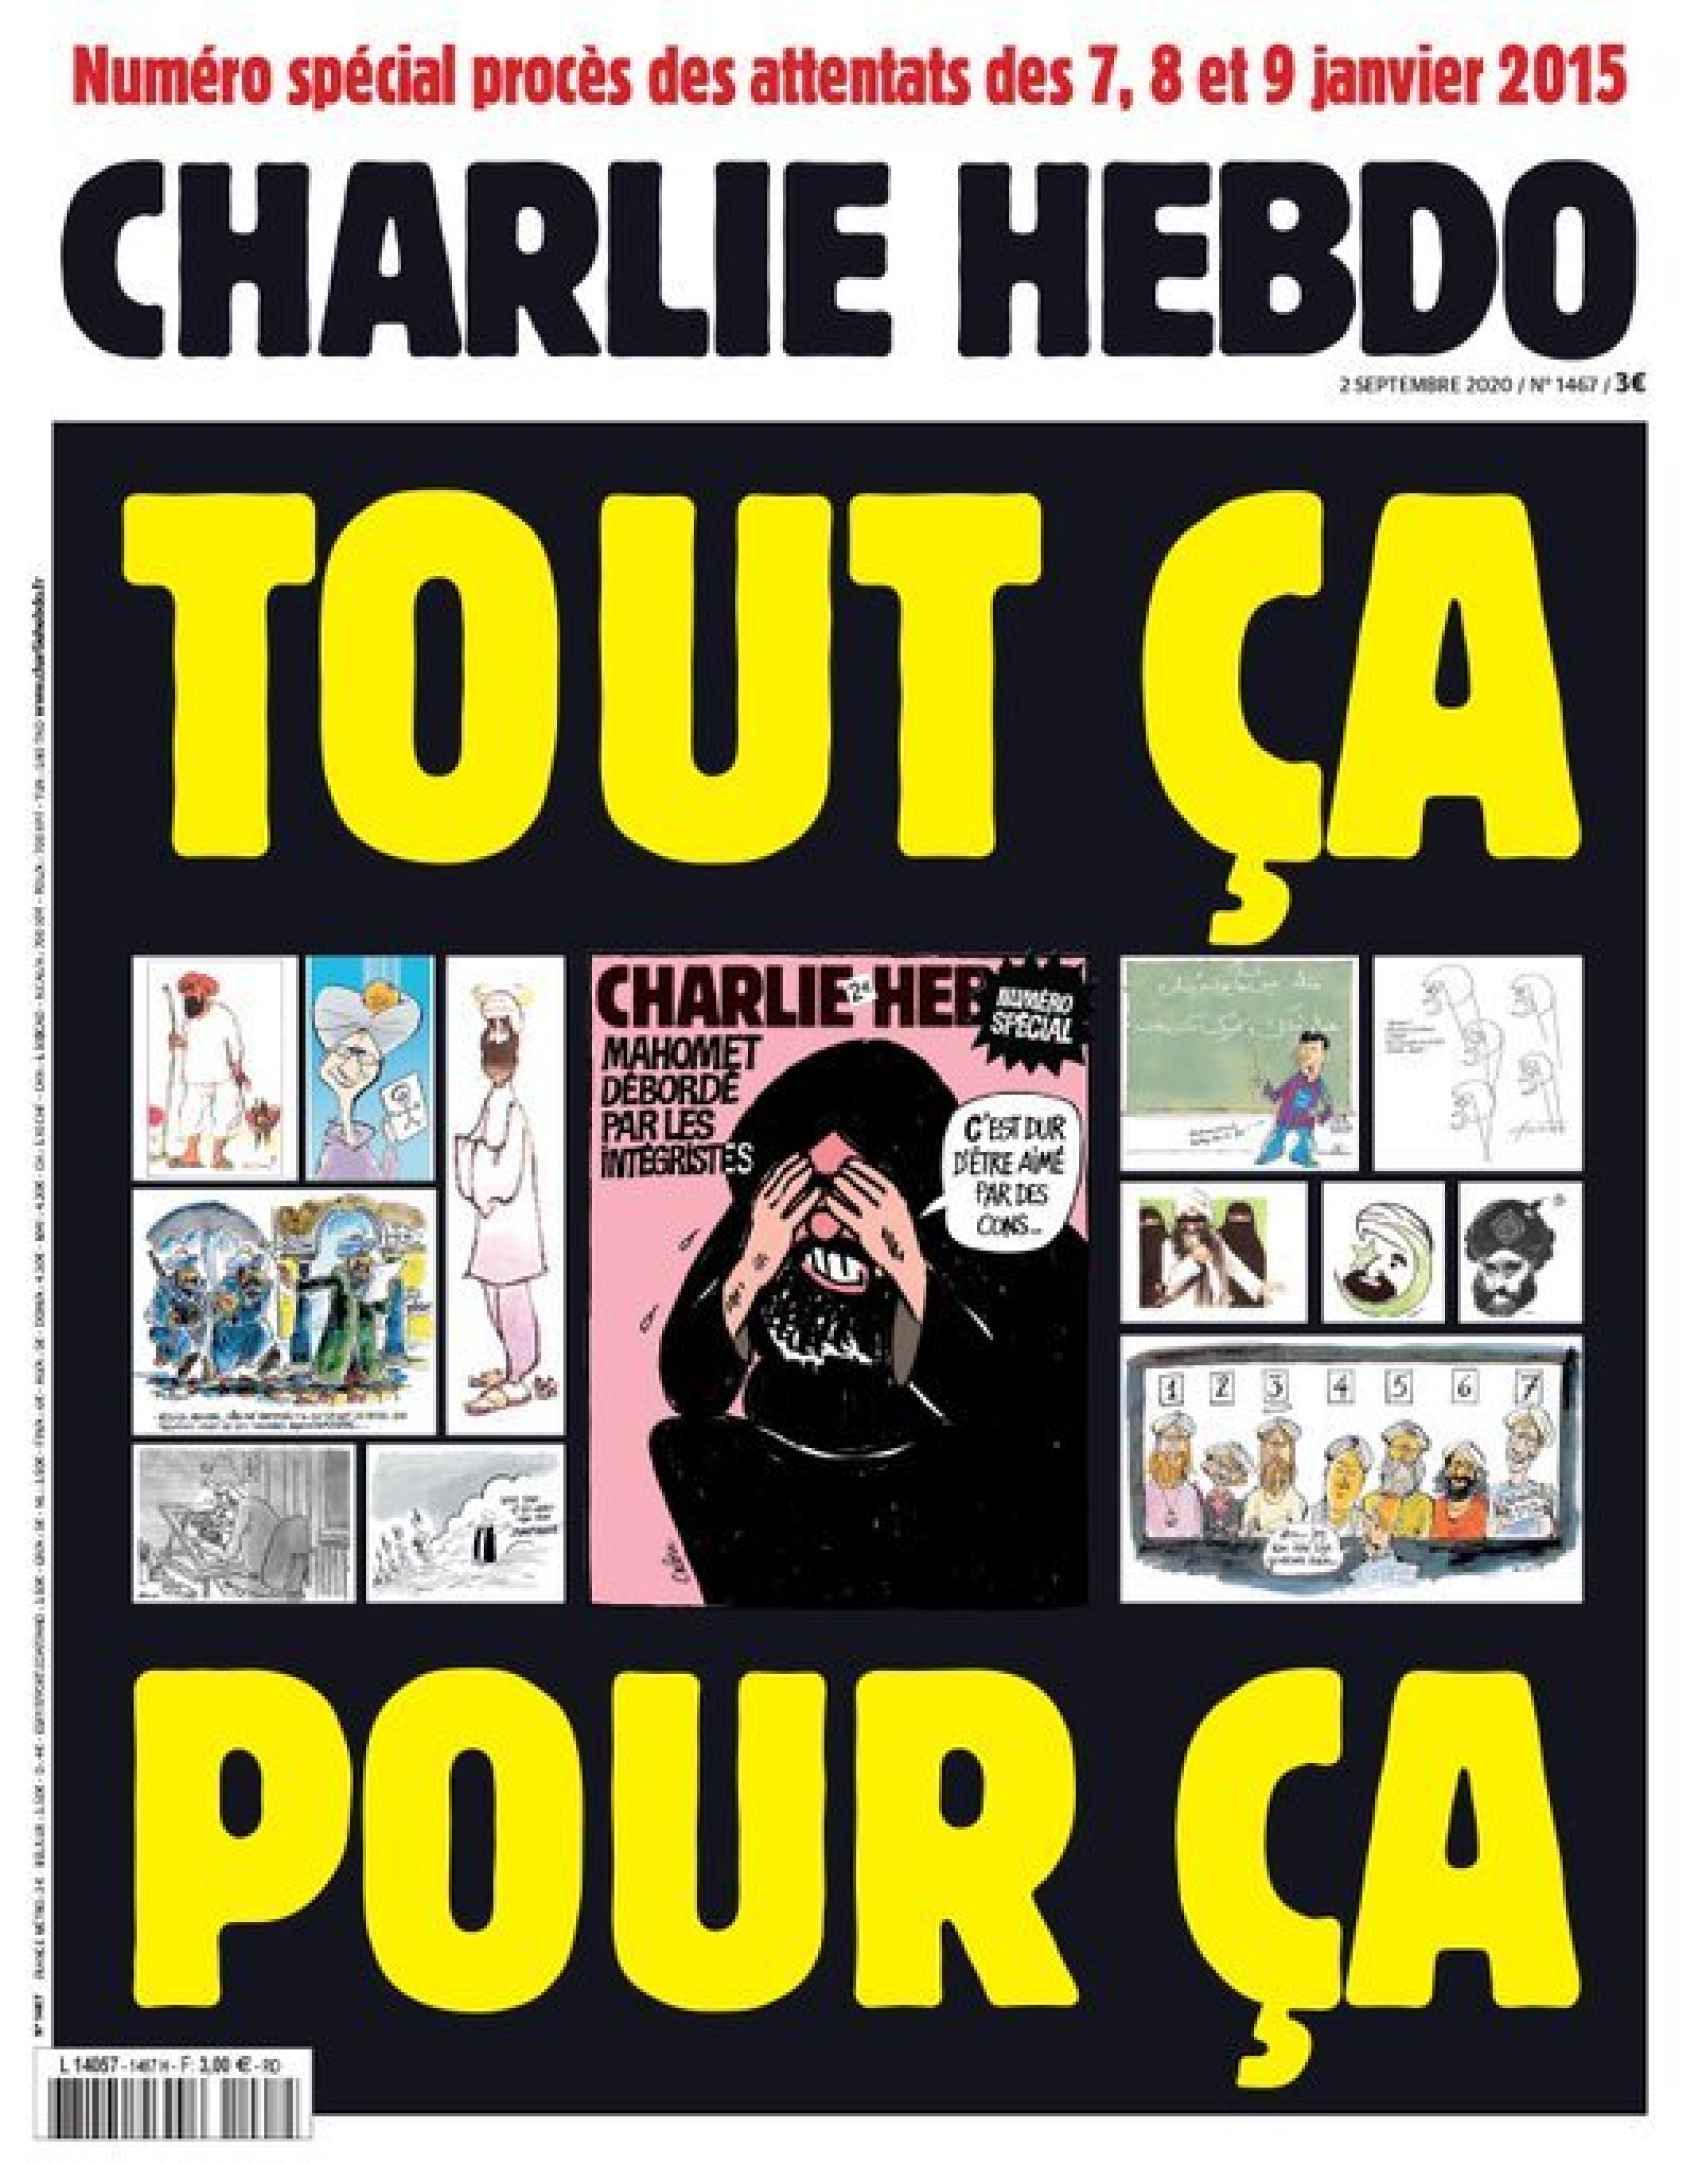 Portada de Charlie Hebdo en la que recuperó las caricaturas de Mahoma.